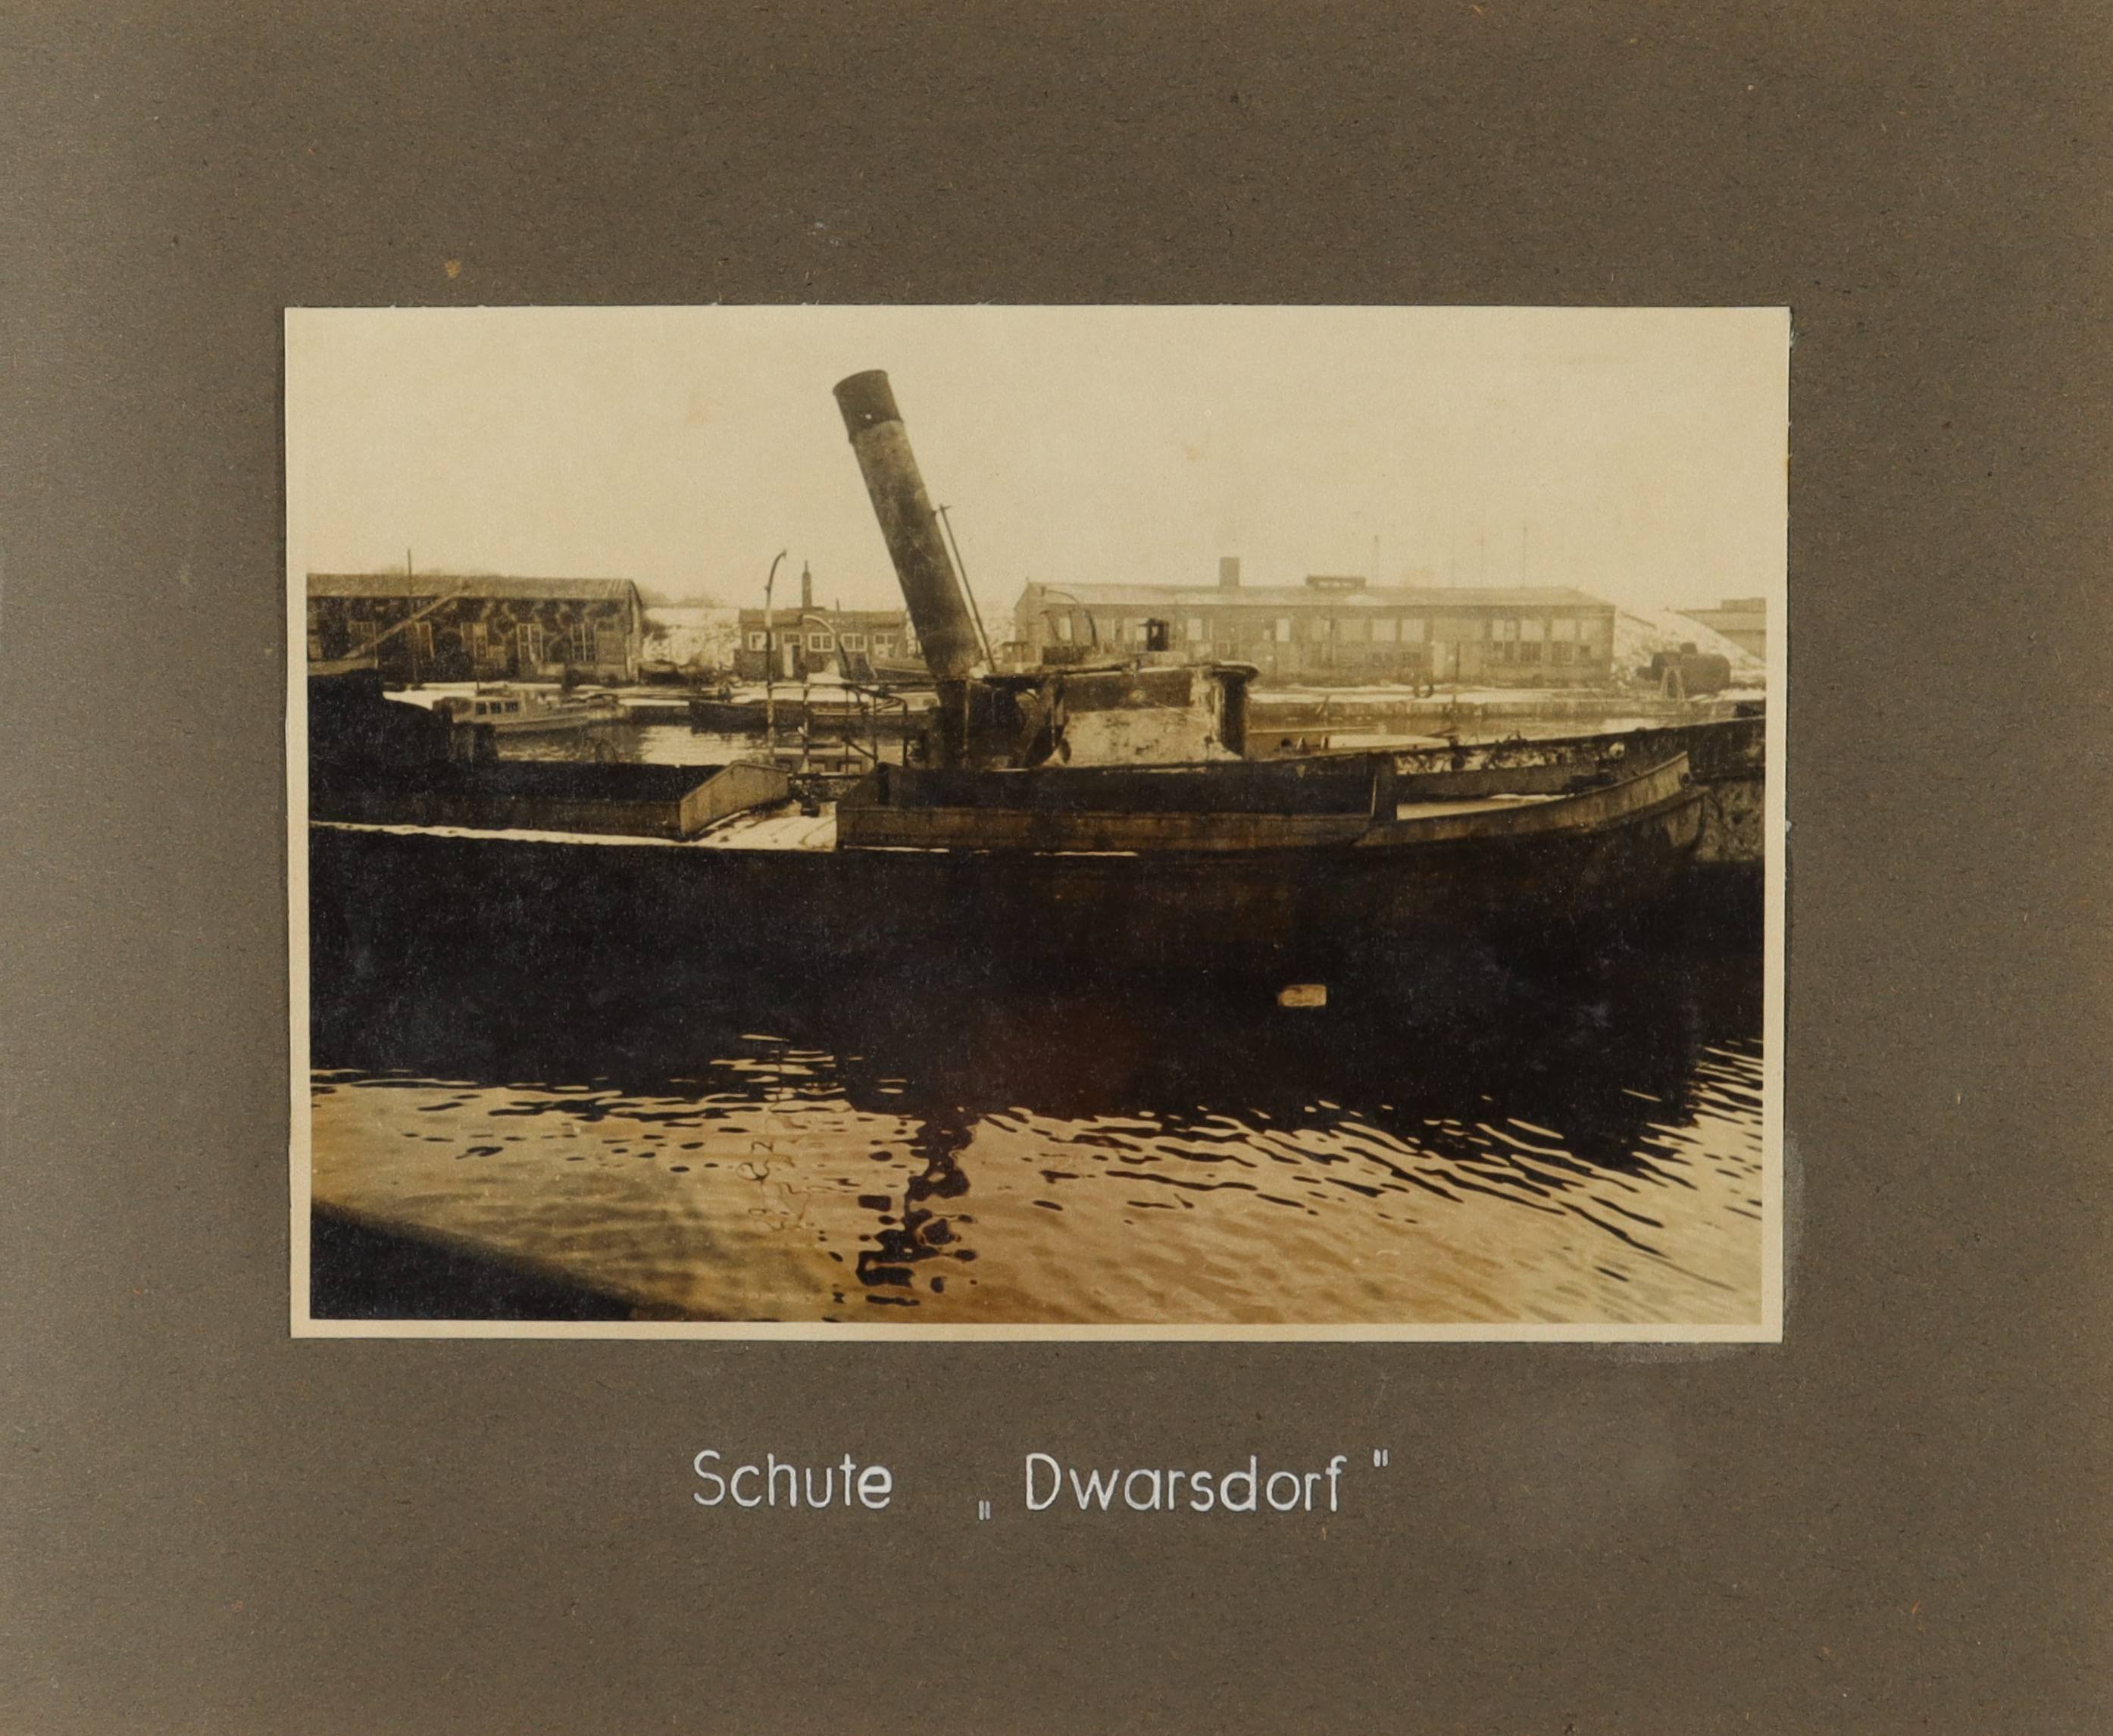 Schute "Dwarsdorf" (Schiffbau- und Schiffahrtsmuseum Rostock RR-F)